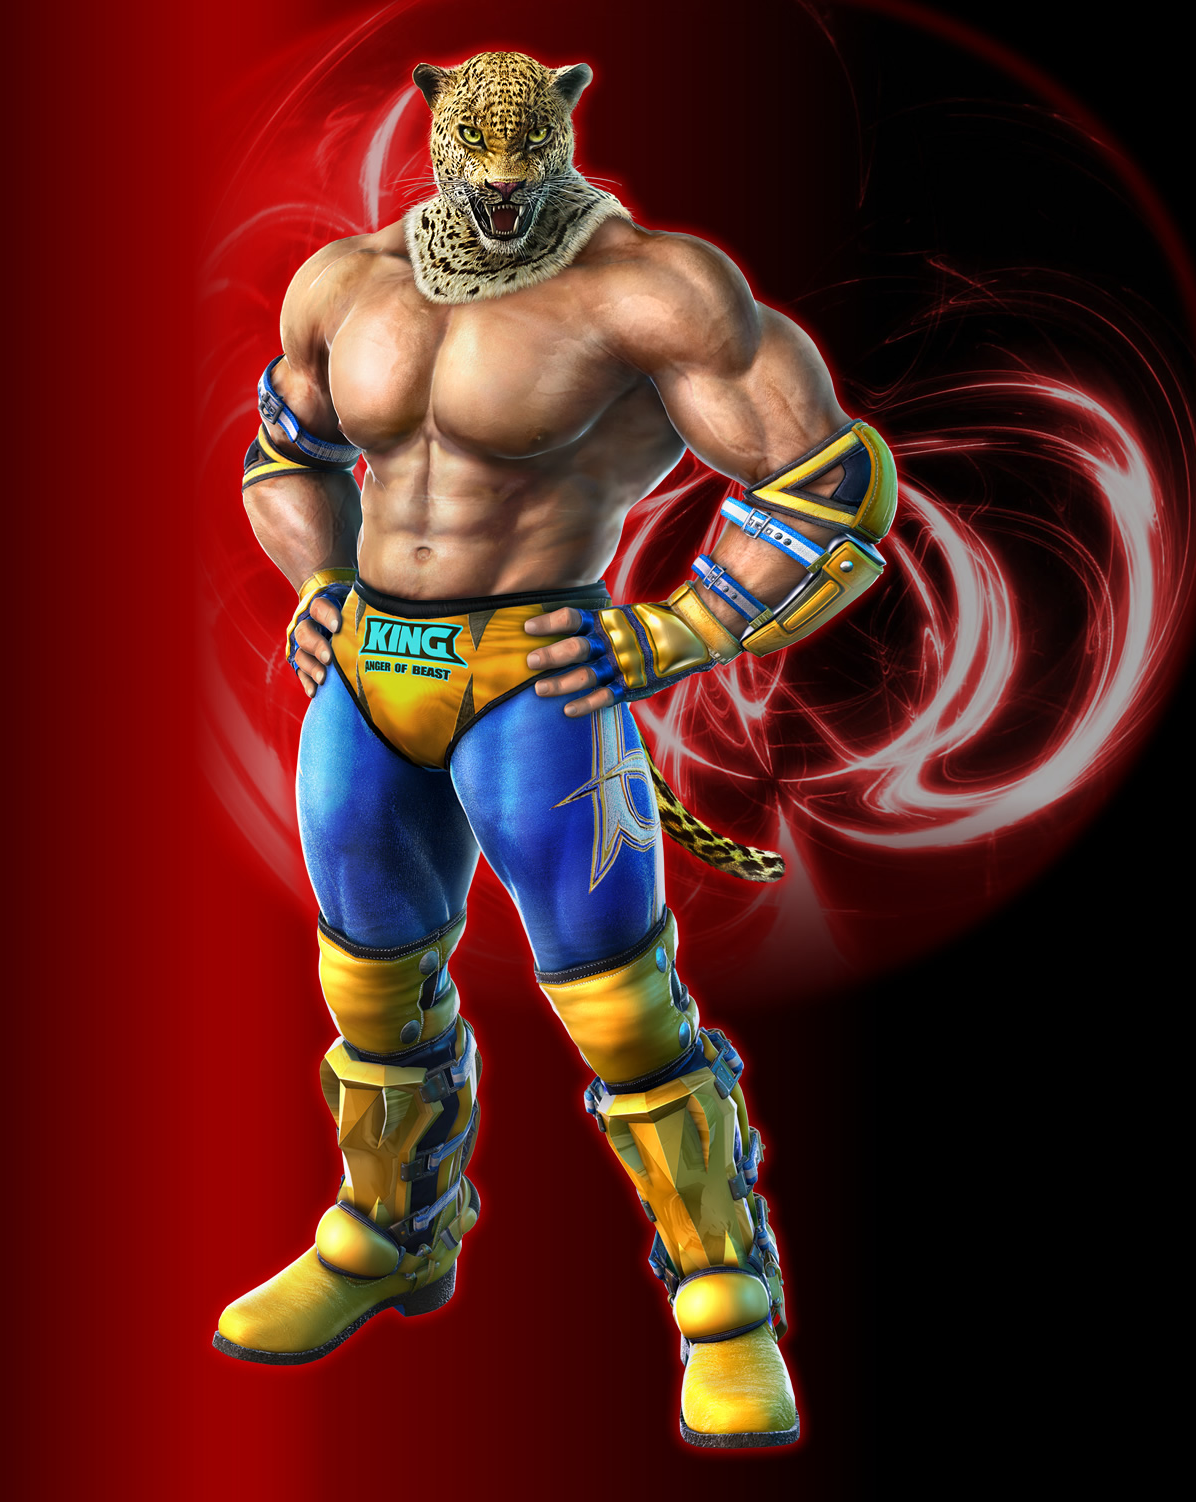 King from the Tekken franchise